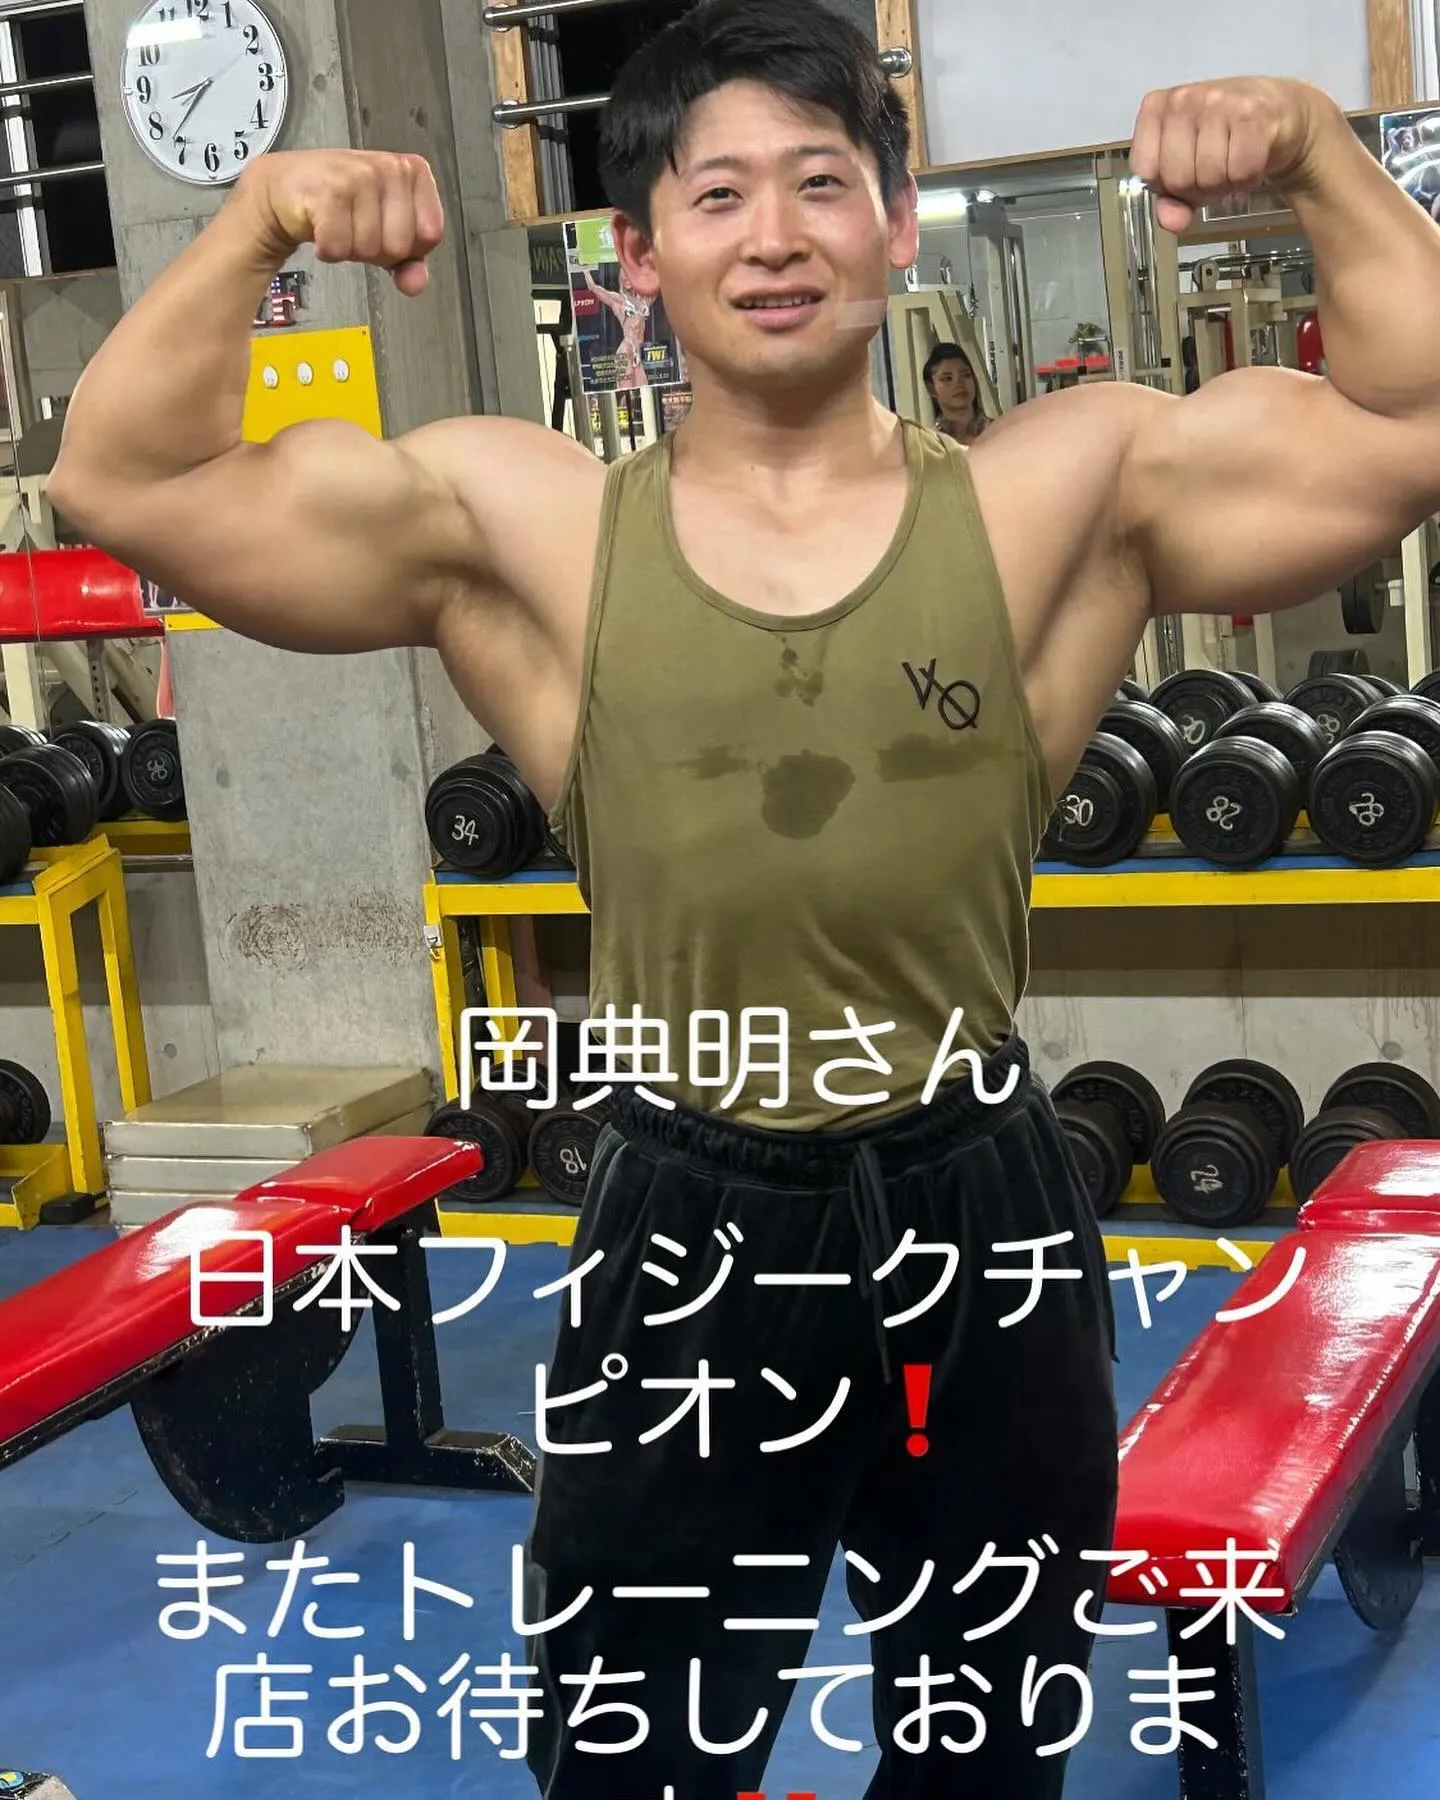 日本フィジークチャンピオン岡典明さんがB&Fでトレーニングに...